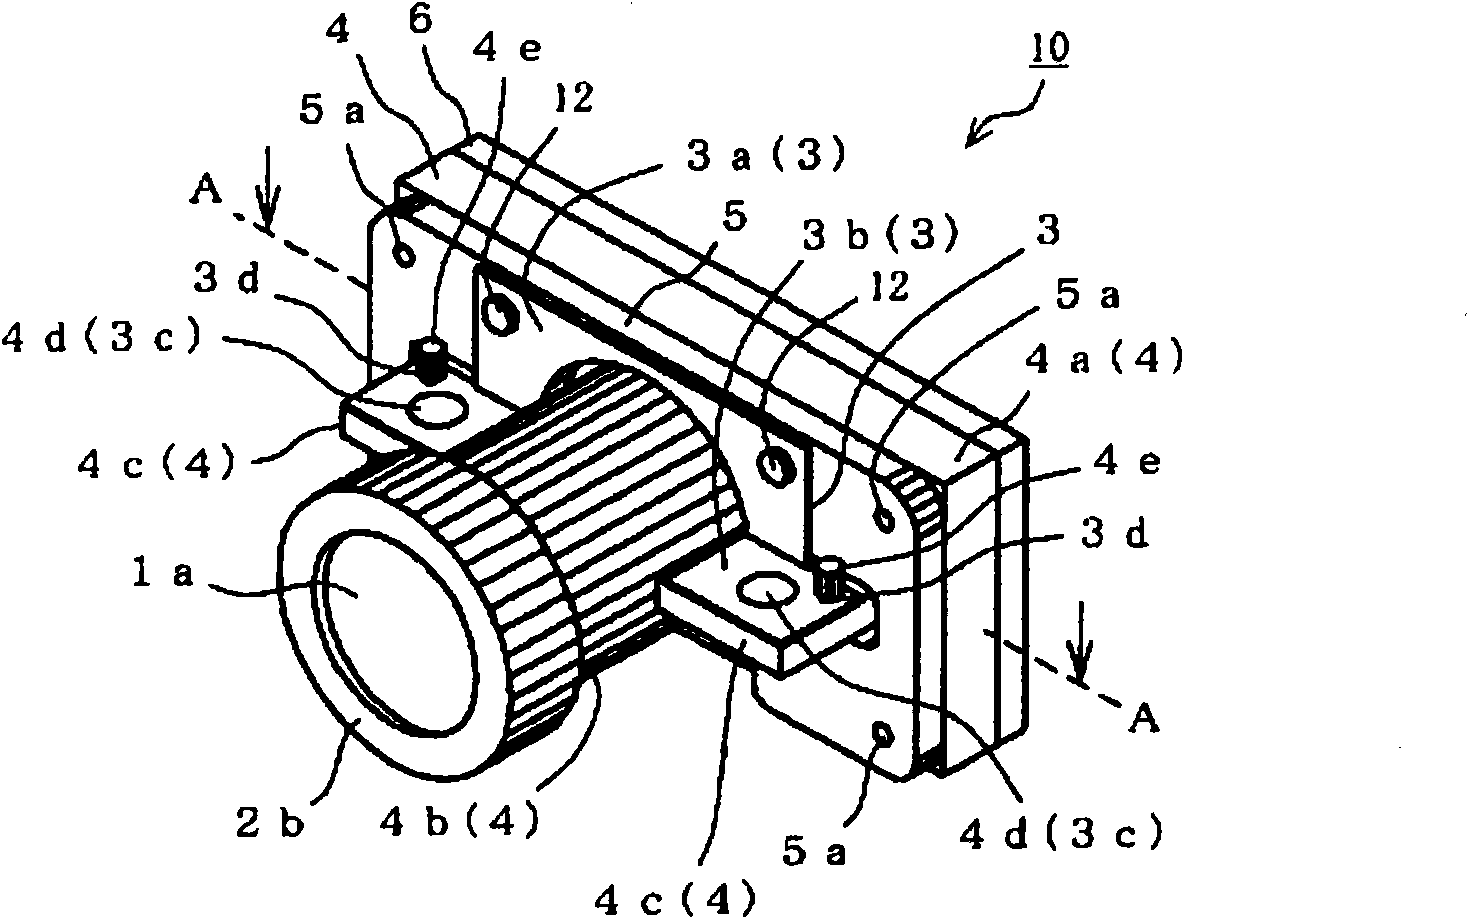 Imaging module